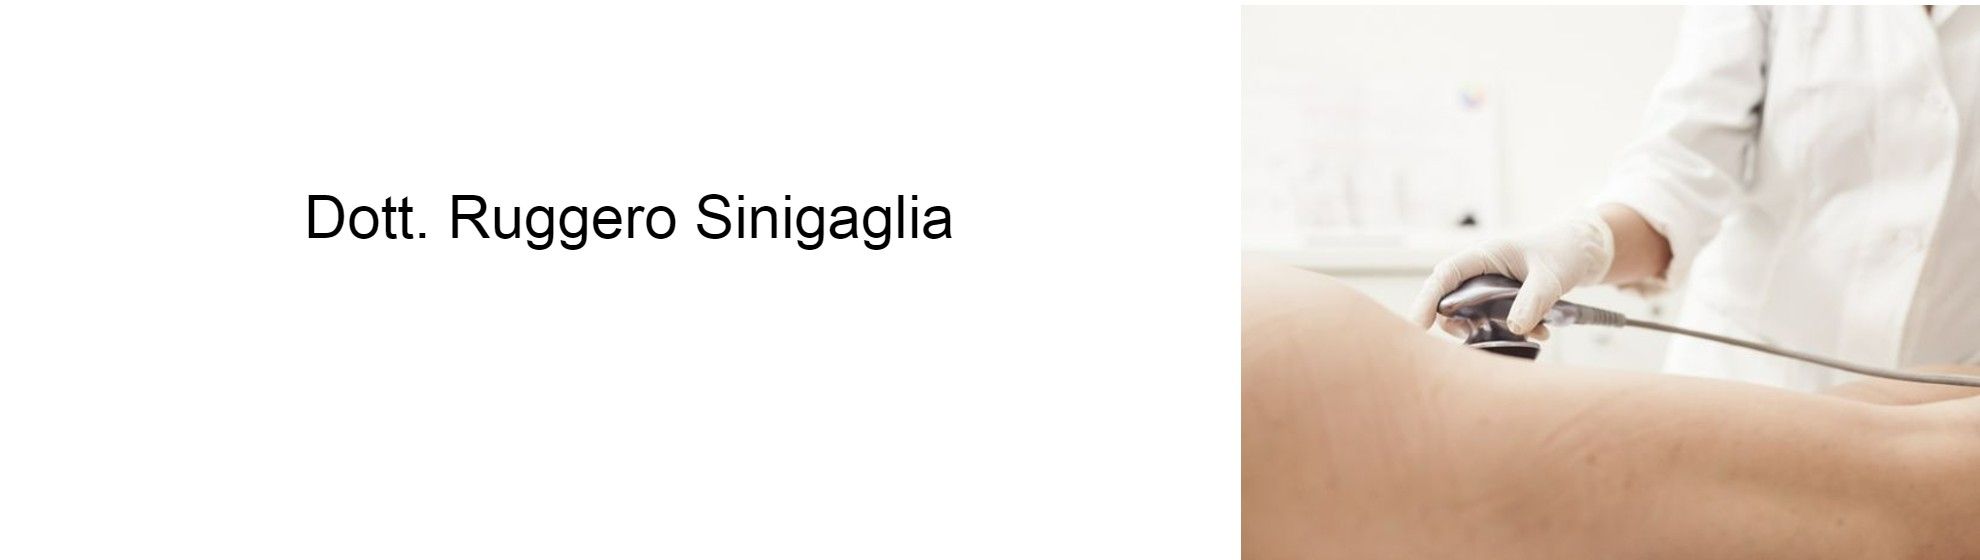 Dott. Ruggero Sinigaglia